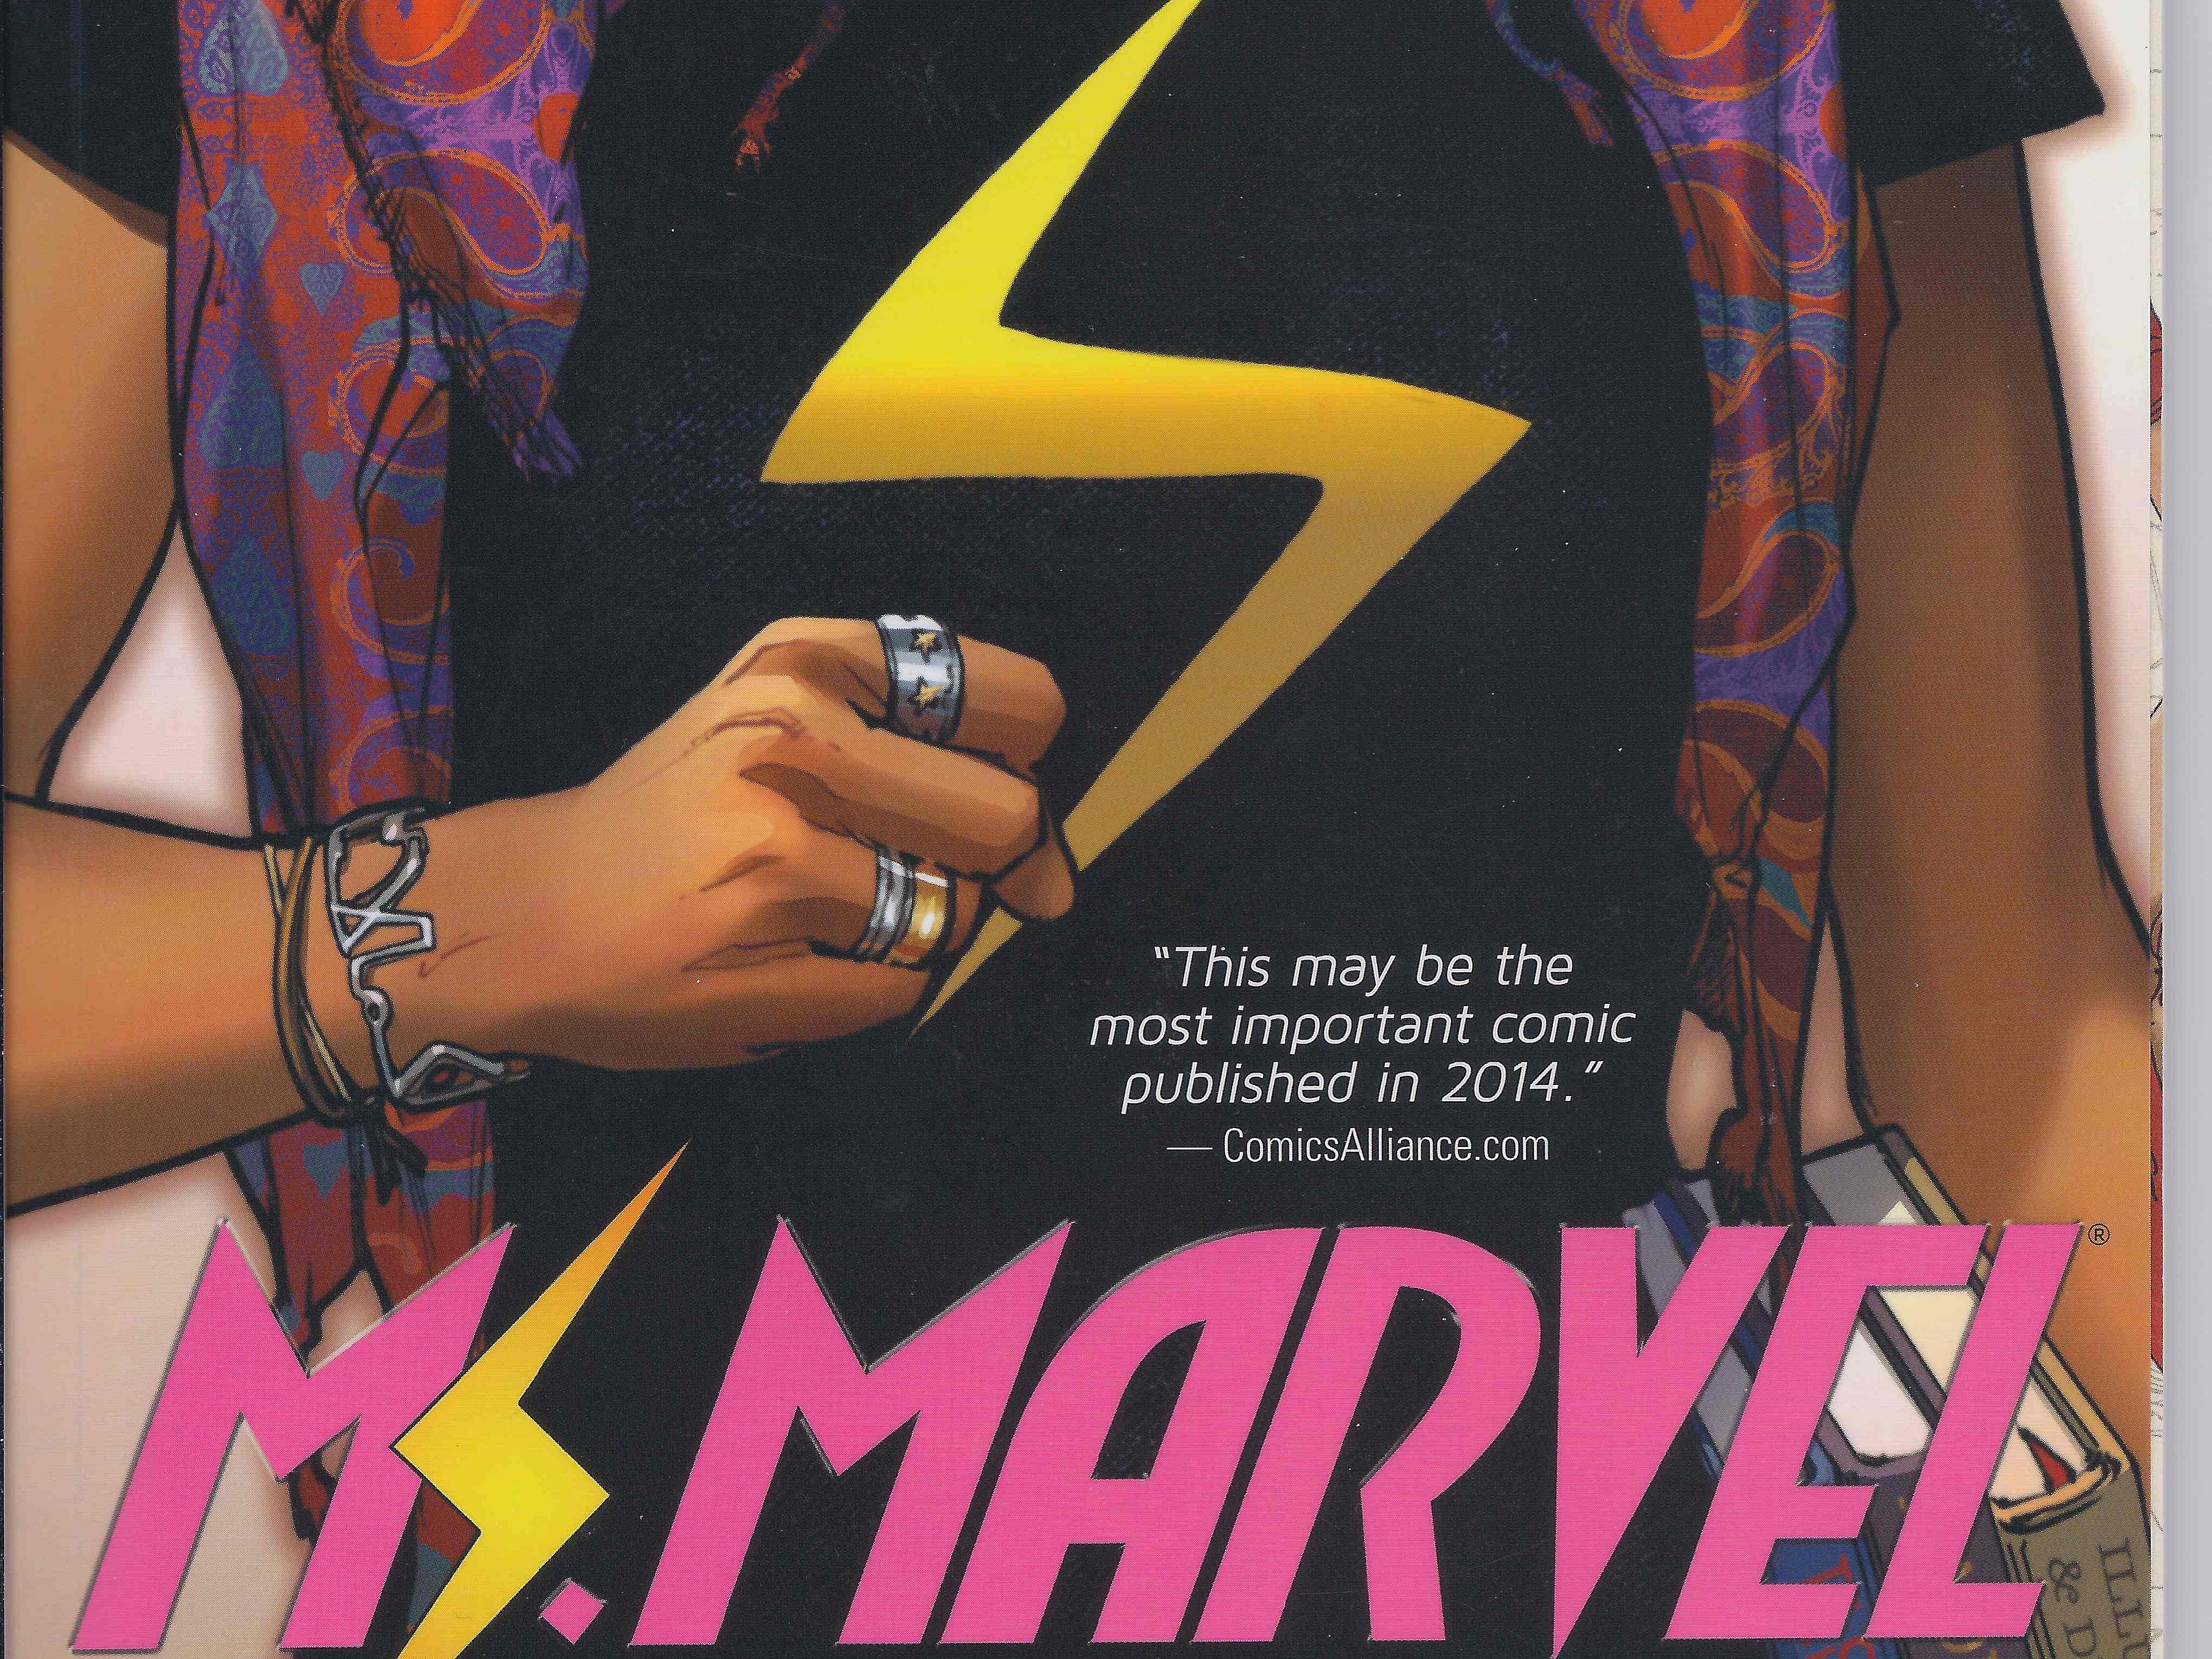 Descarga gratuita de fondo de pantalla para móvil de Historietas, Ms Marvel.